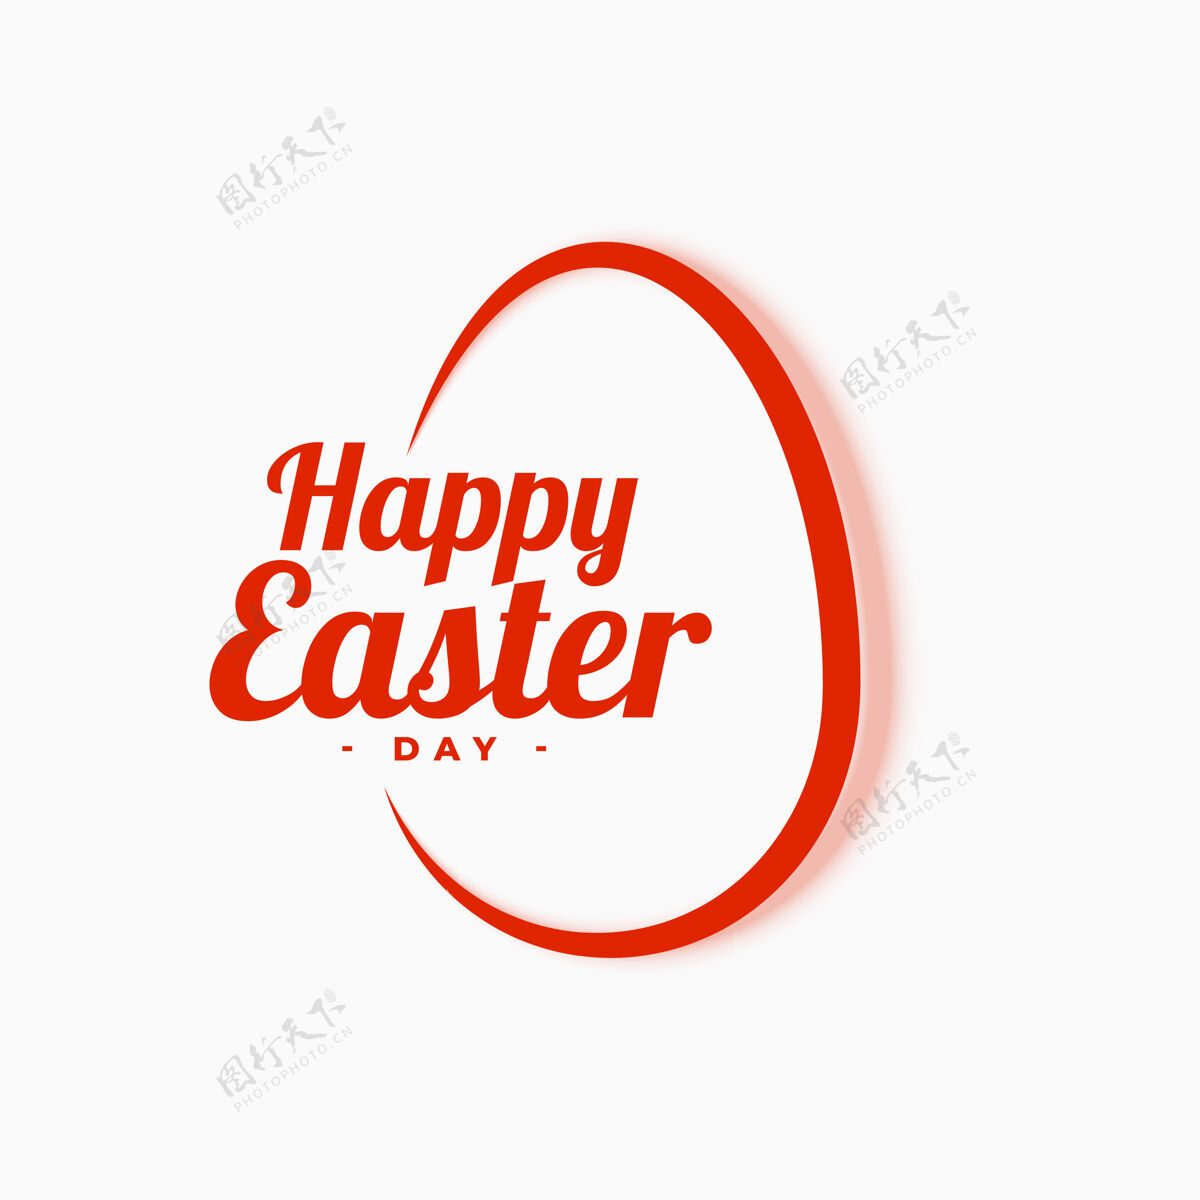 兔子干净的复活节快乐问候语基督教传统快乐